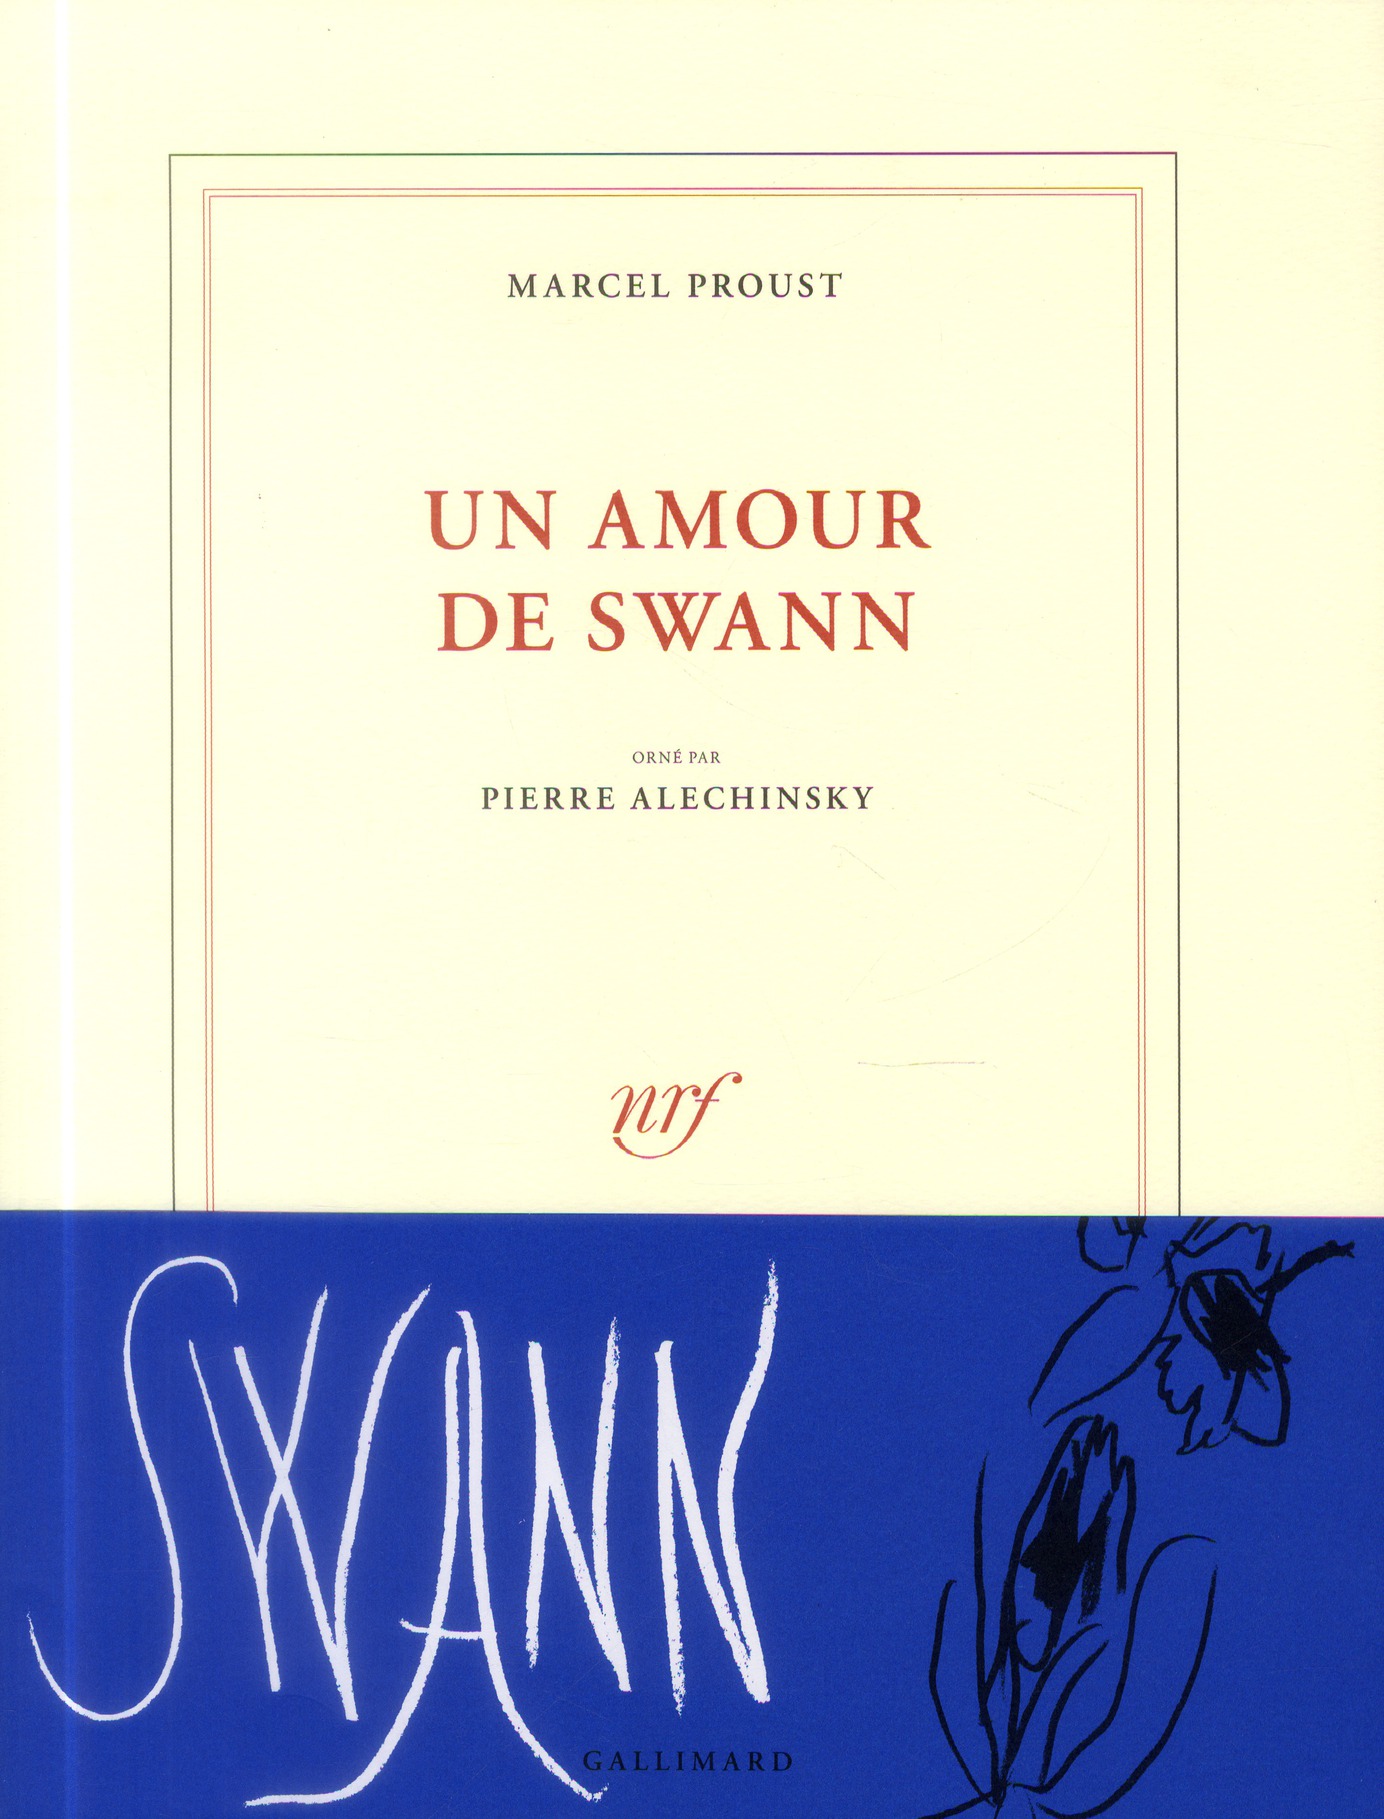 Un amour de swann